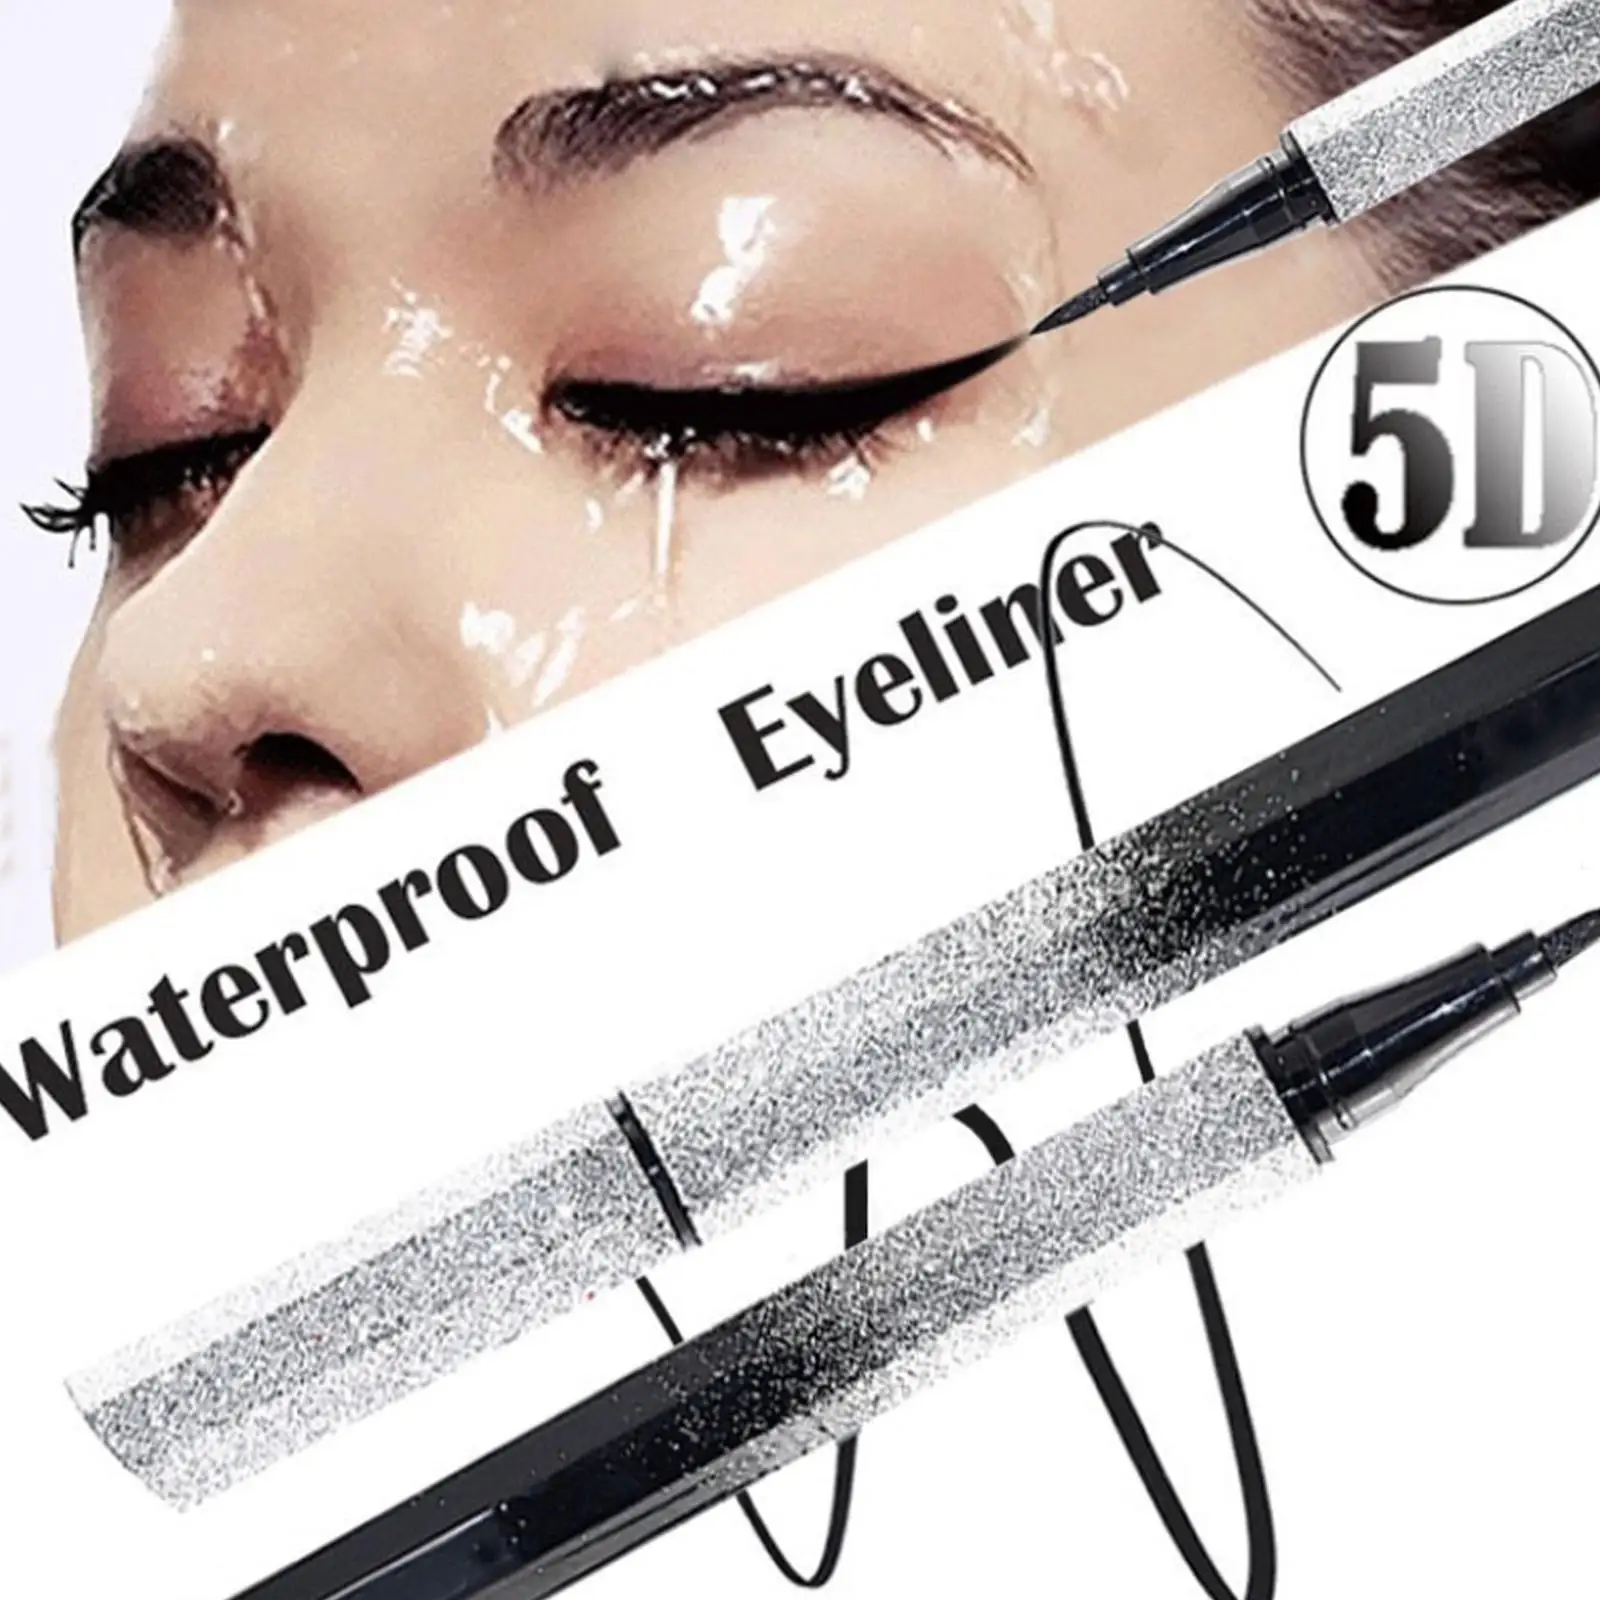 

1PC New Brand Women Black Liquid Eyeliner Long-lasting Waterproof Eye Liner Pencil Pen Nice Makeup Cosmetic Tools